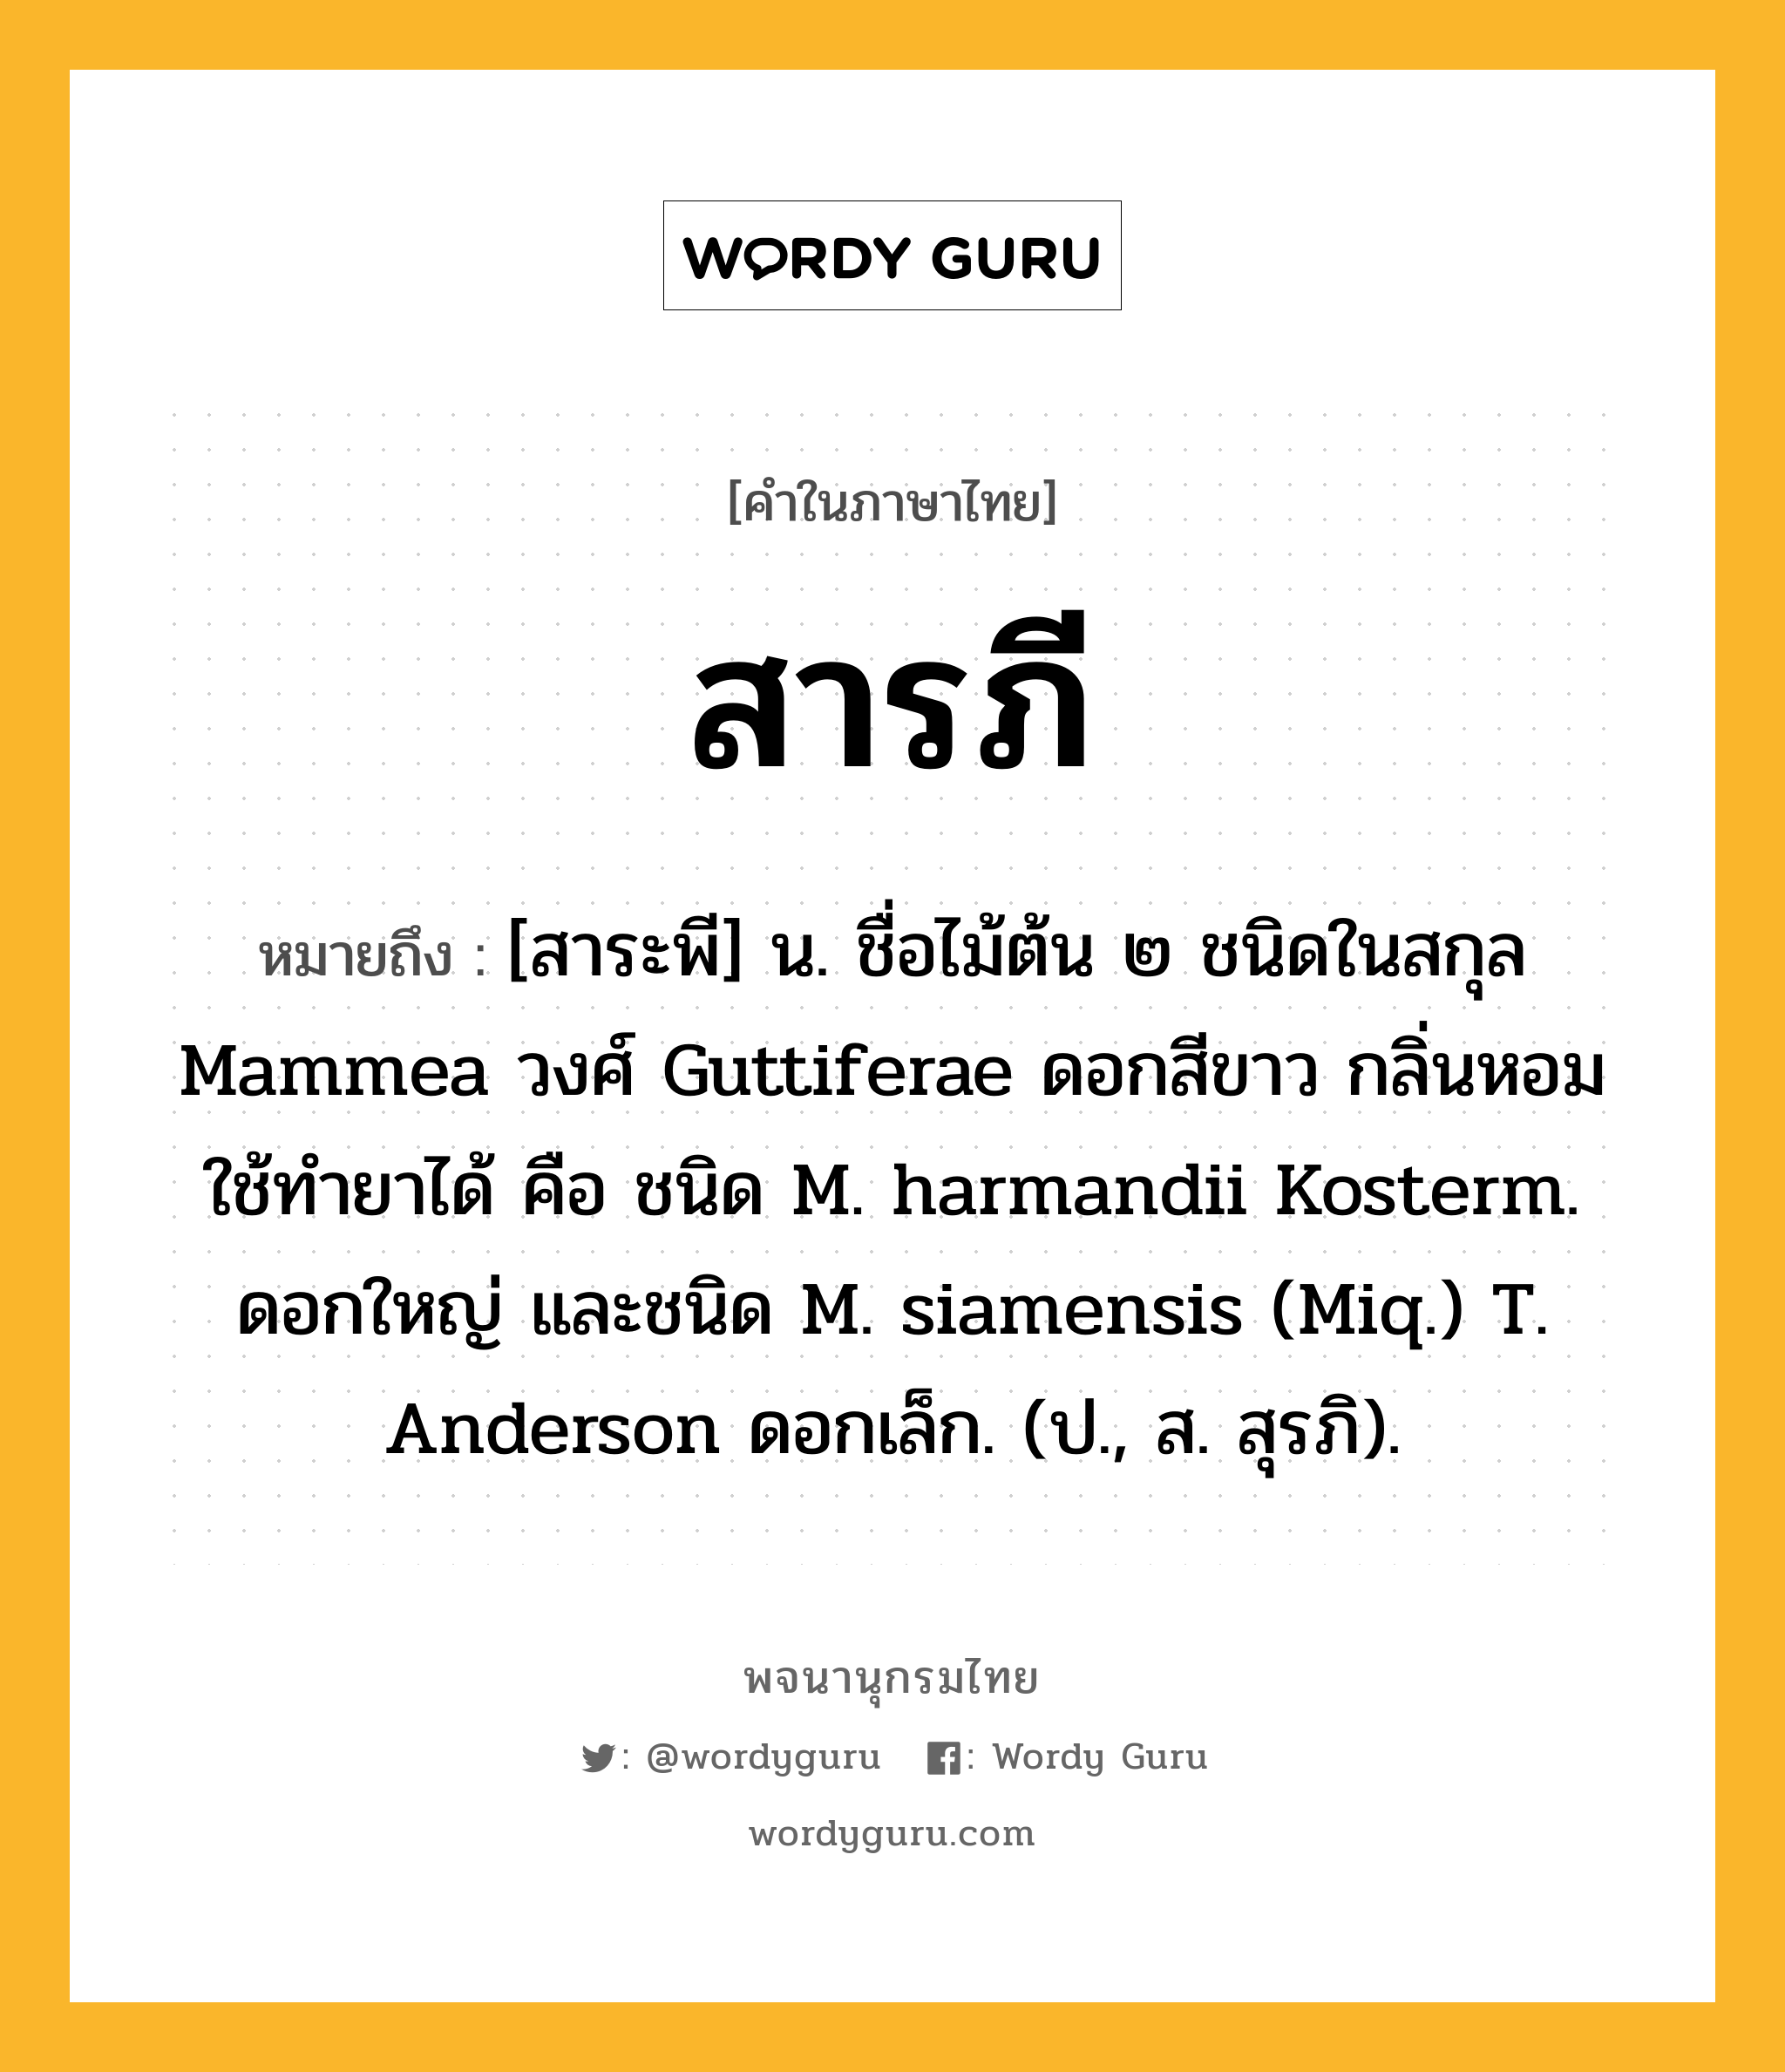 สารภี ความหมาย หมายถึงอะไร?, คำในภาษาไทย สารภี หมายถึง [สาระพี] น. ชื่อไม้ต้น ๒ ชนิดในสกุล Mammea วงศ์ Guttiferae ดอกสีขาว กลิ่นหอม ใช้ทํายาได้ คือ ชนิด M. harmandii Kosterm. ดอกใหญ่ และชนิด M. siamensis (Miq.) T. Anderson ดอกเล็ก. (ป., ส. สุรภิ).